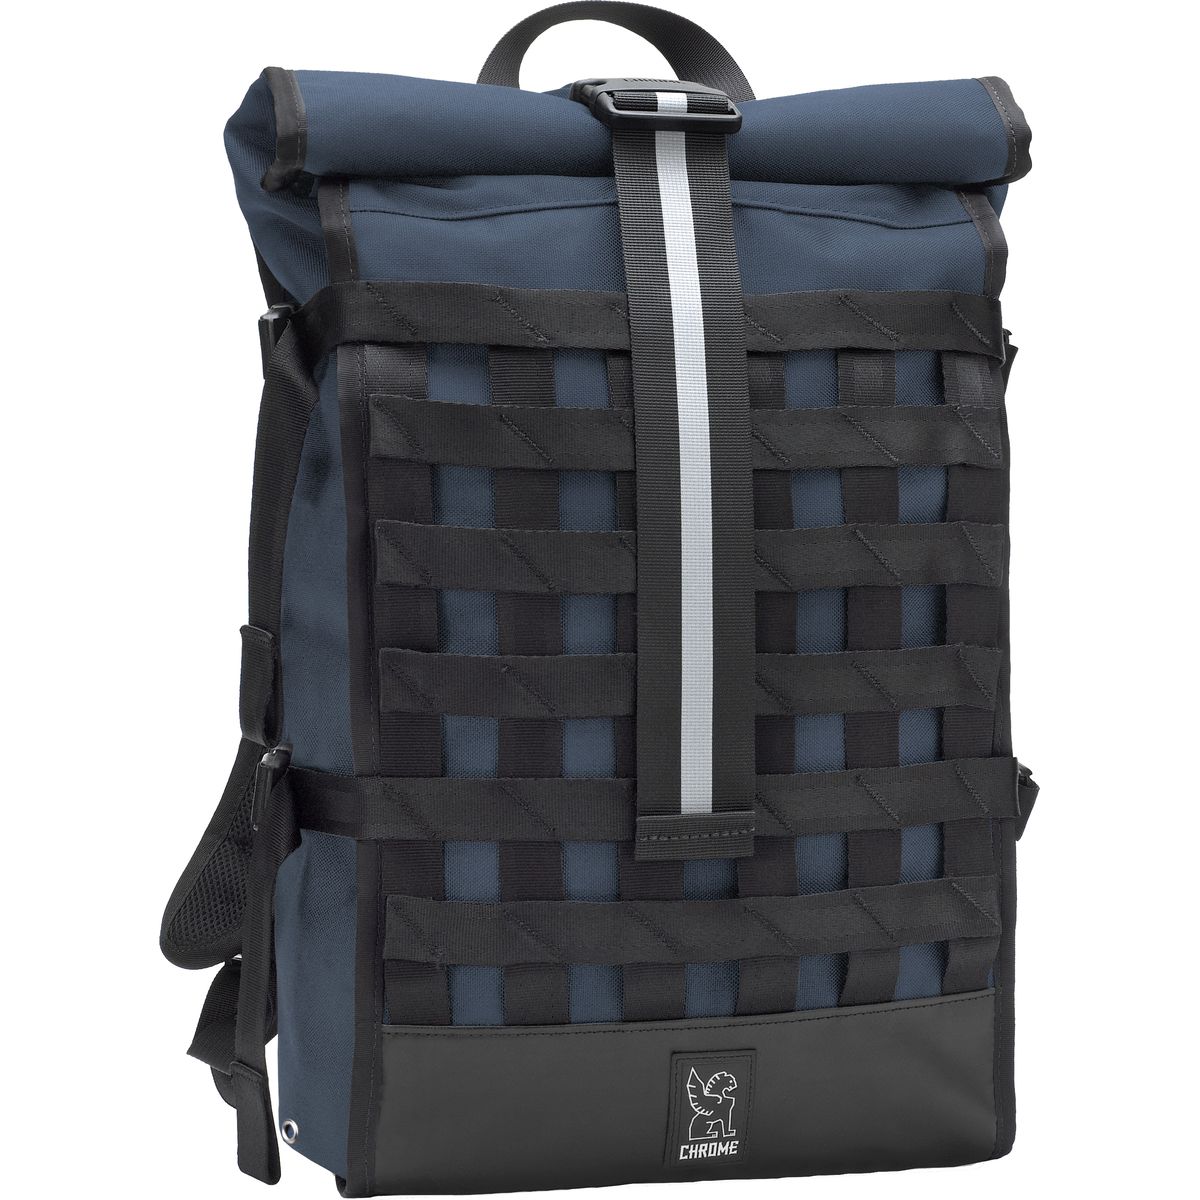 Chrome Barrage Cargo Backpack 2075cu in